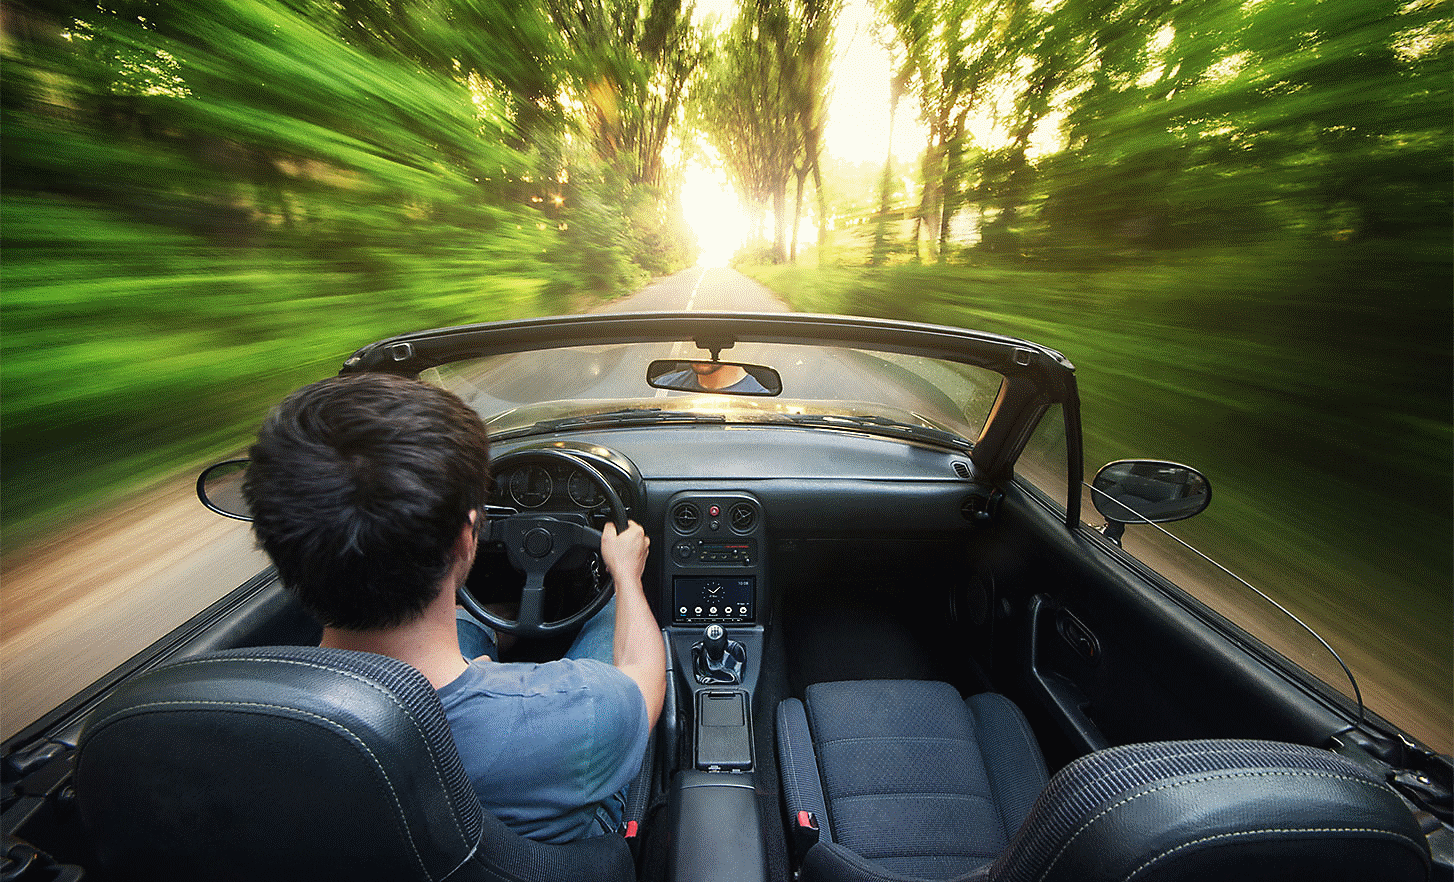 Afbeelding van een persoon die in een cabriolet rijdt over een met bomen omzoomde weg, met een XAV-AX4050 in het dashboard